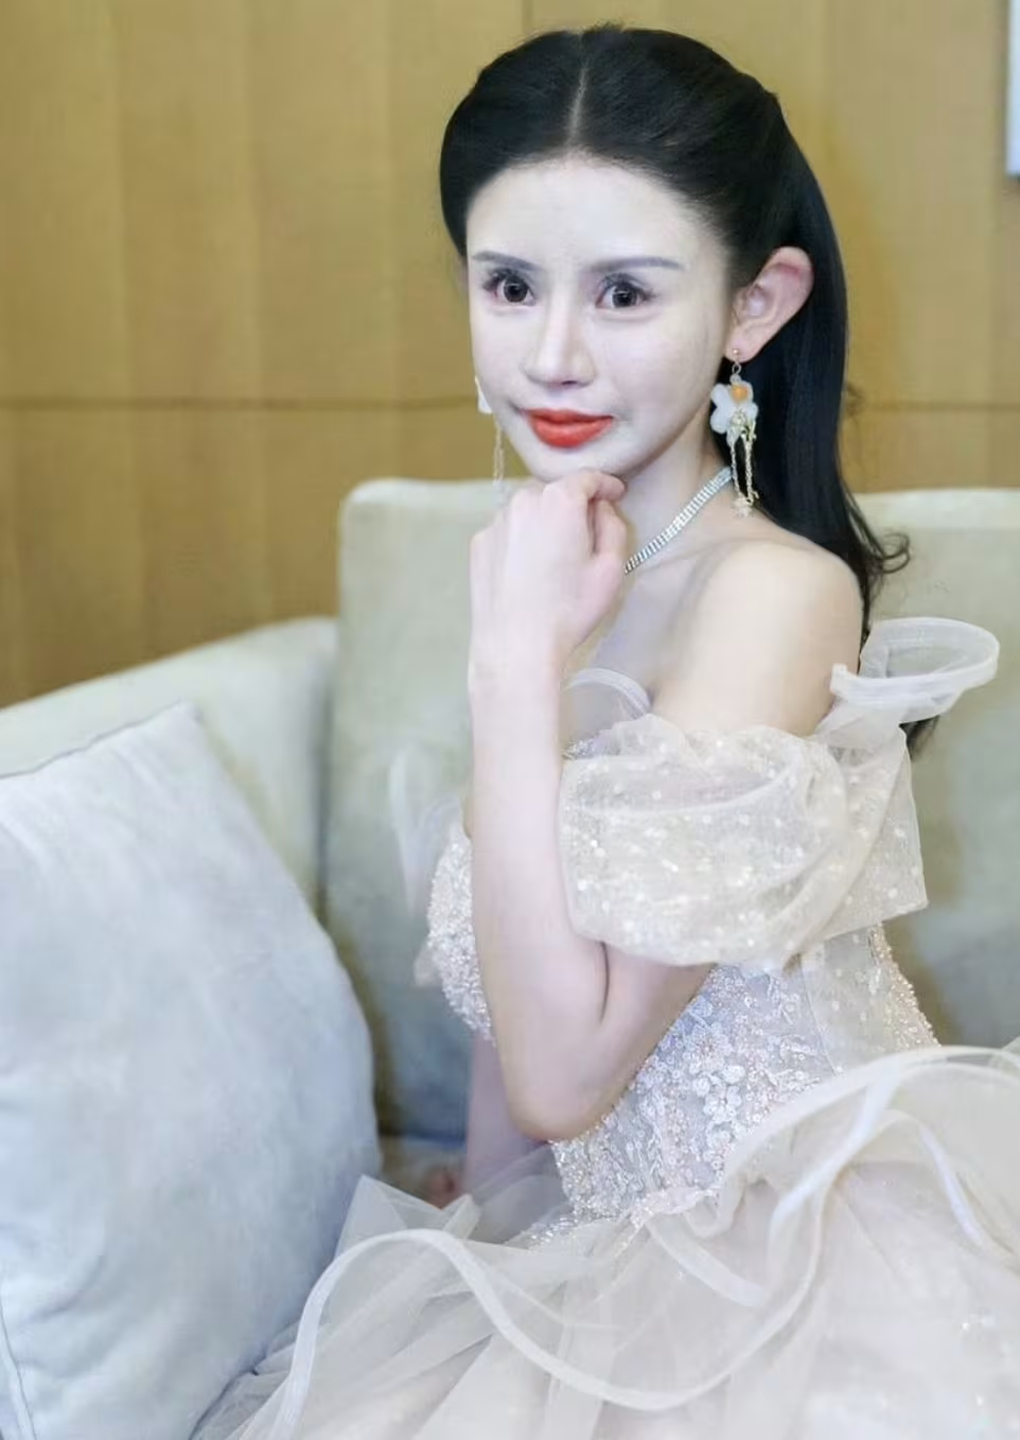 Nhan sắc khác lạ của hot girl Trung Quốc nghiện dao kéo từ năm 13 tuổi - 2